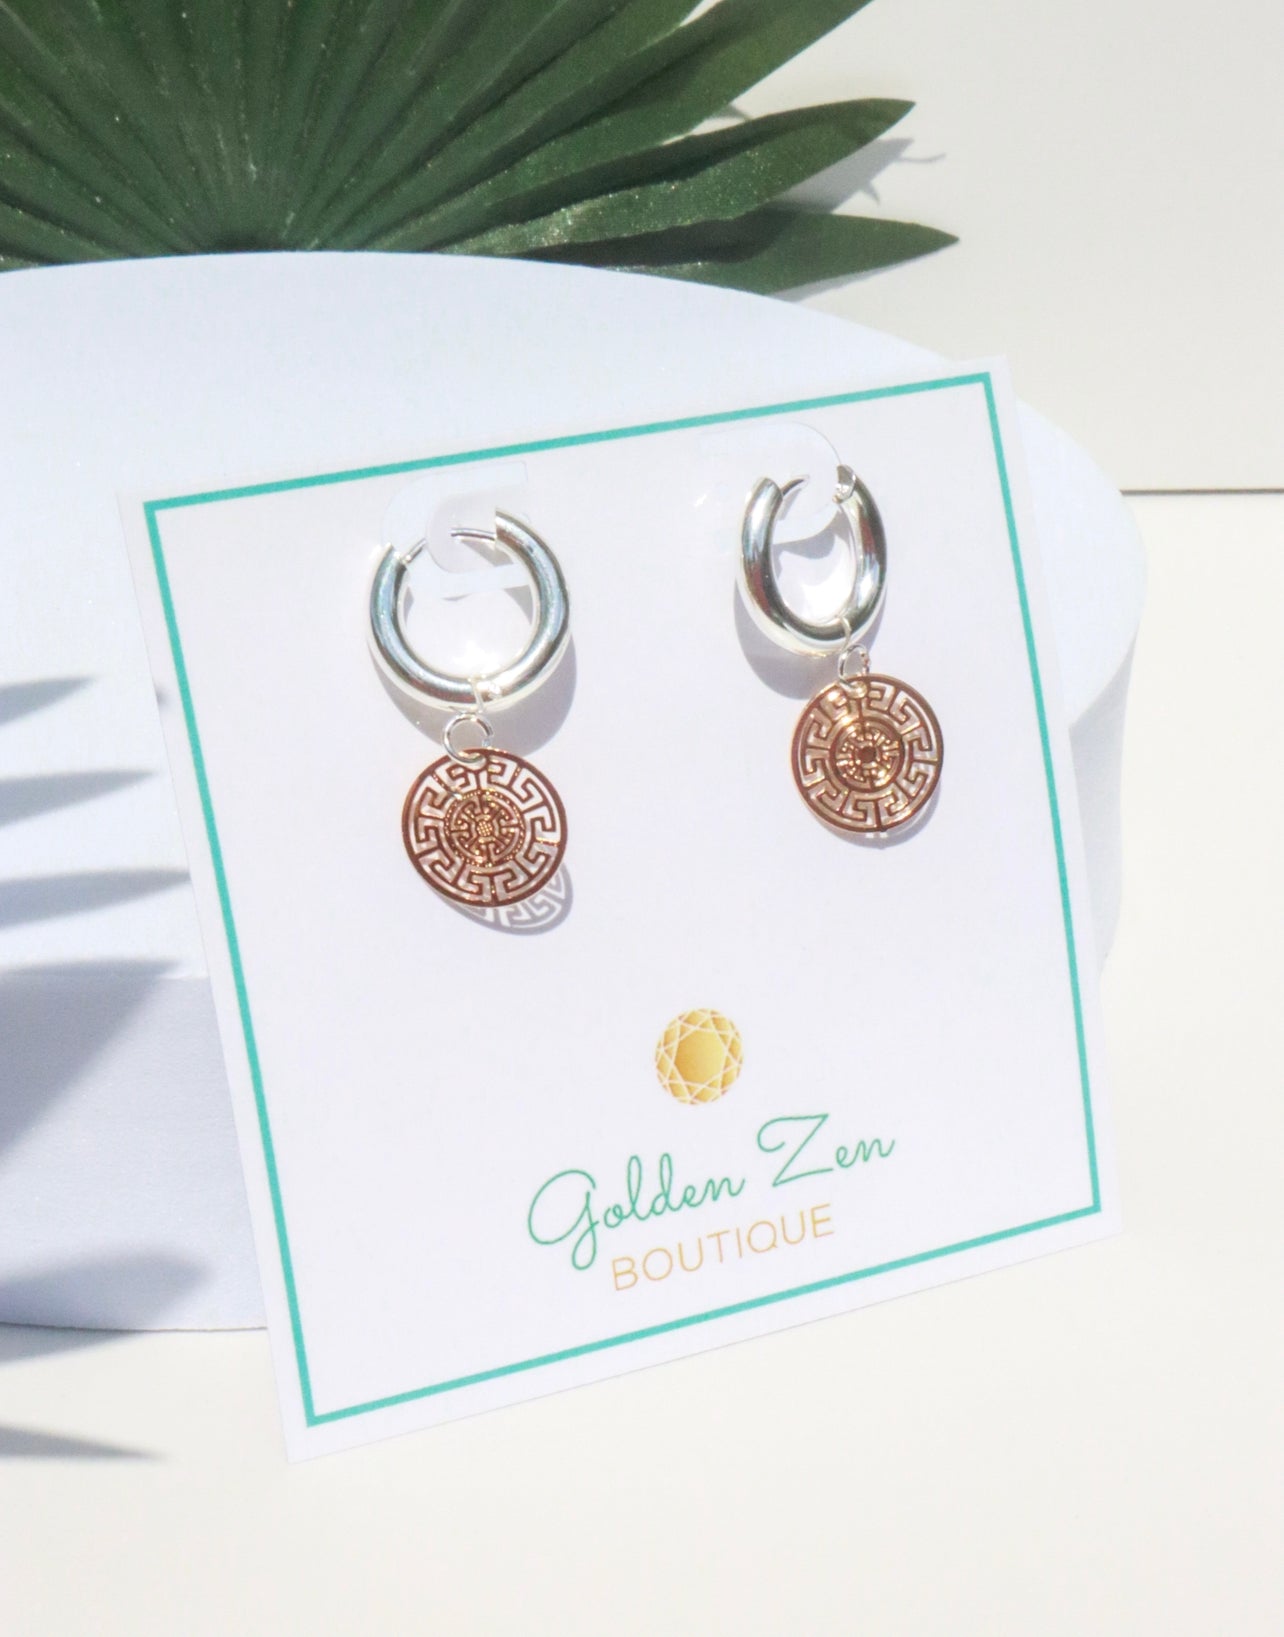 Two Tone Gold & Silver Greek Key Medallion Hoop Earrings